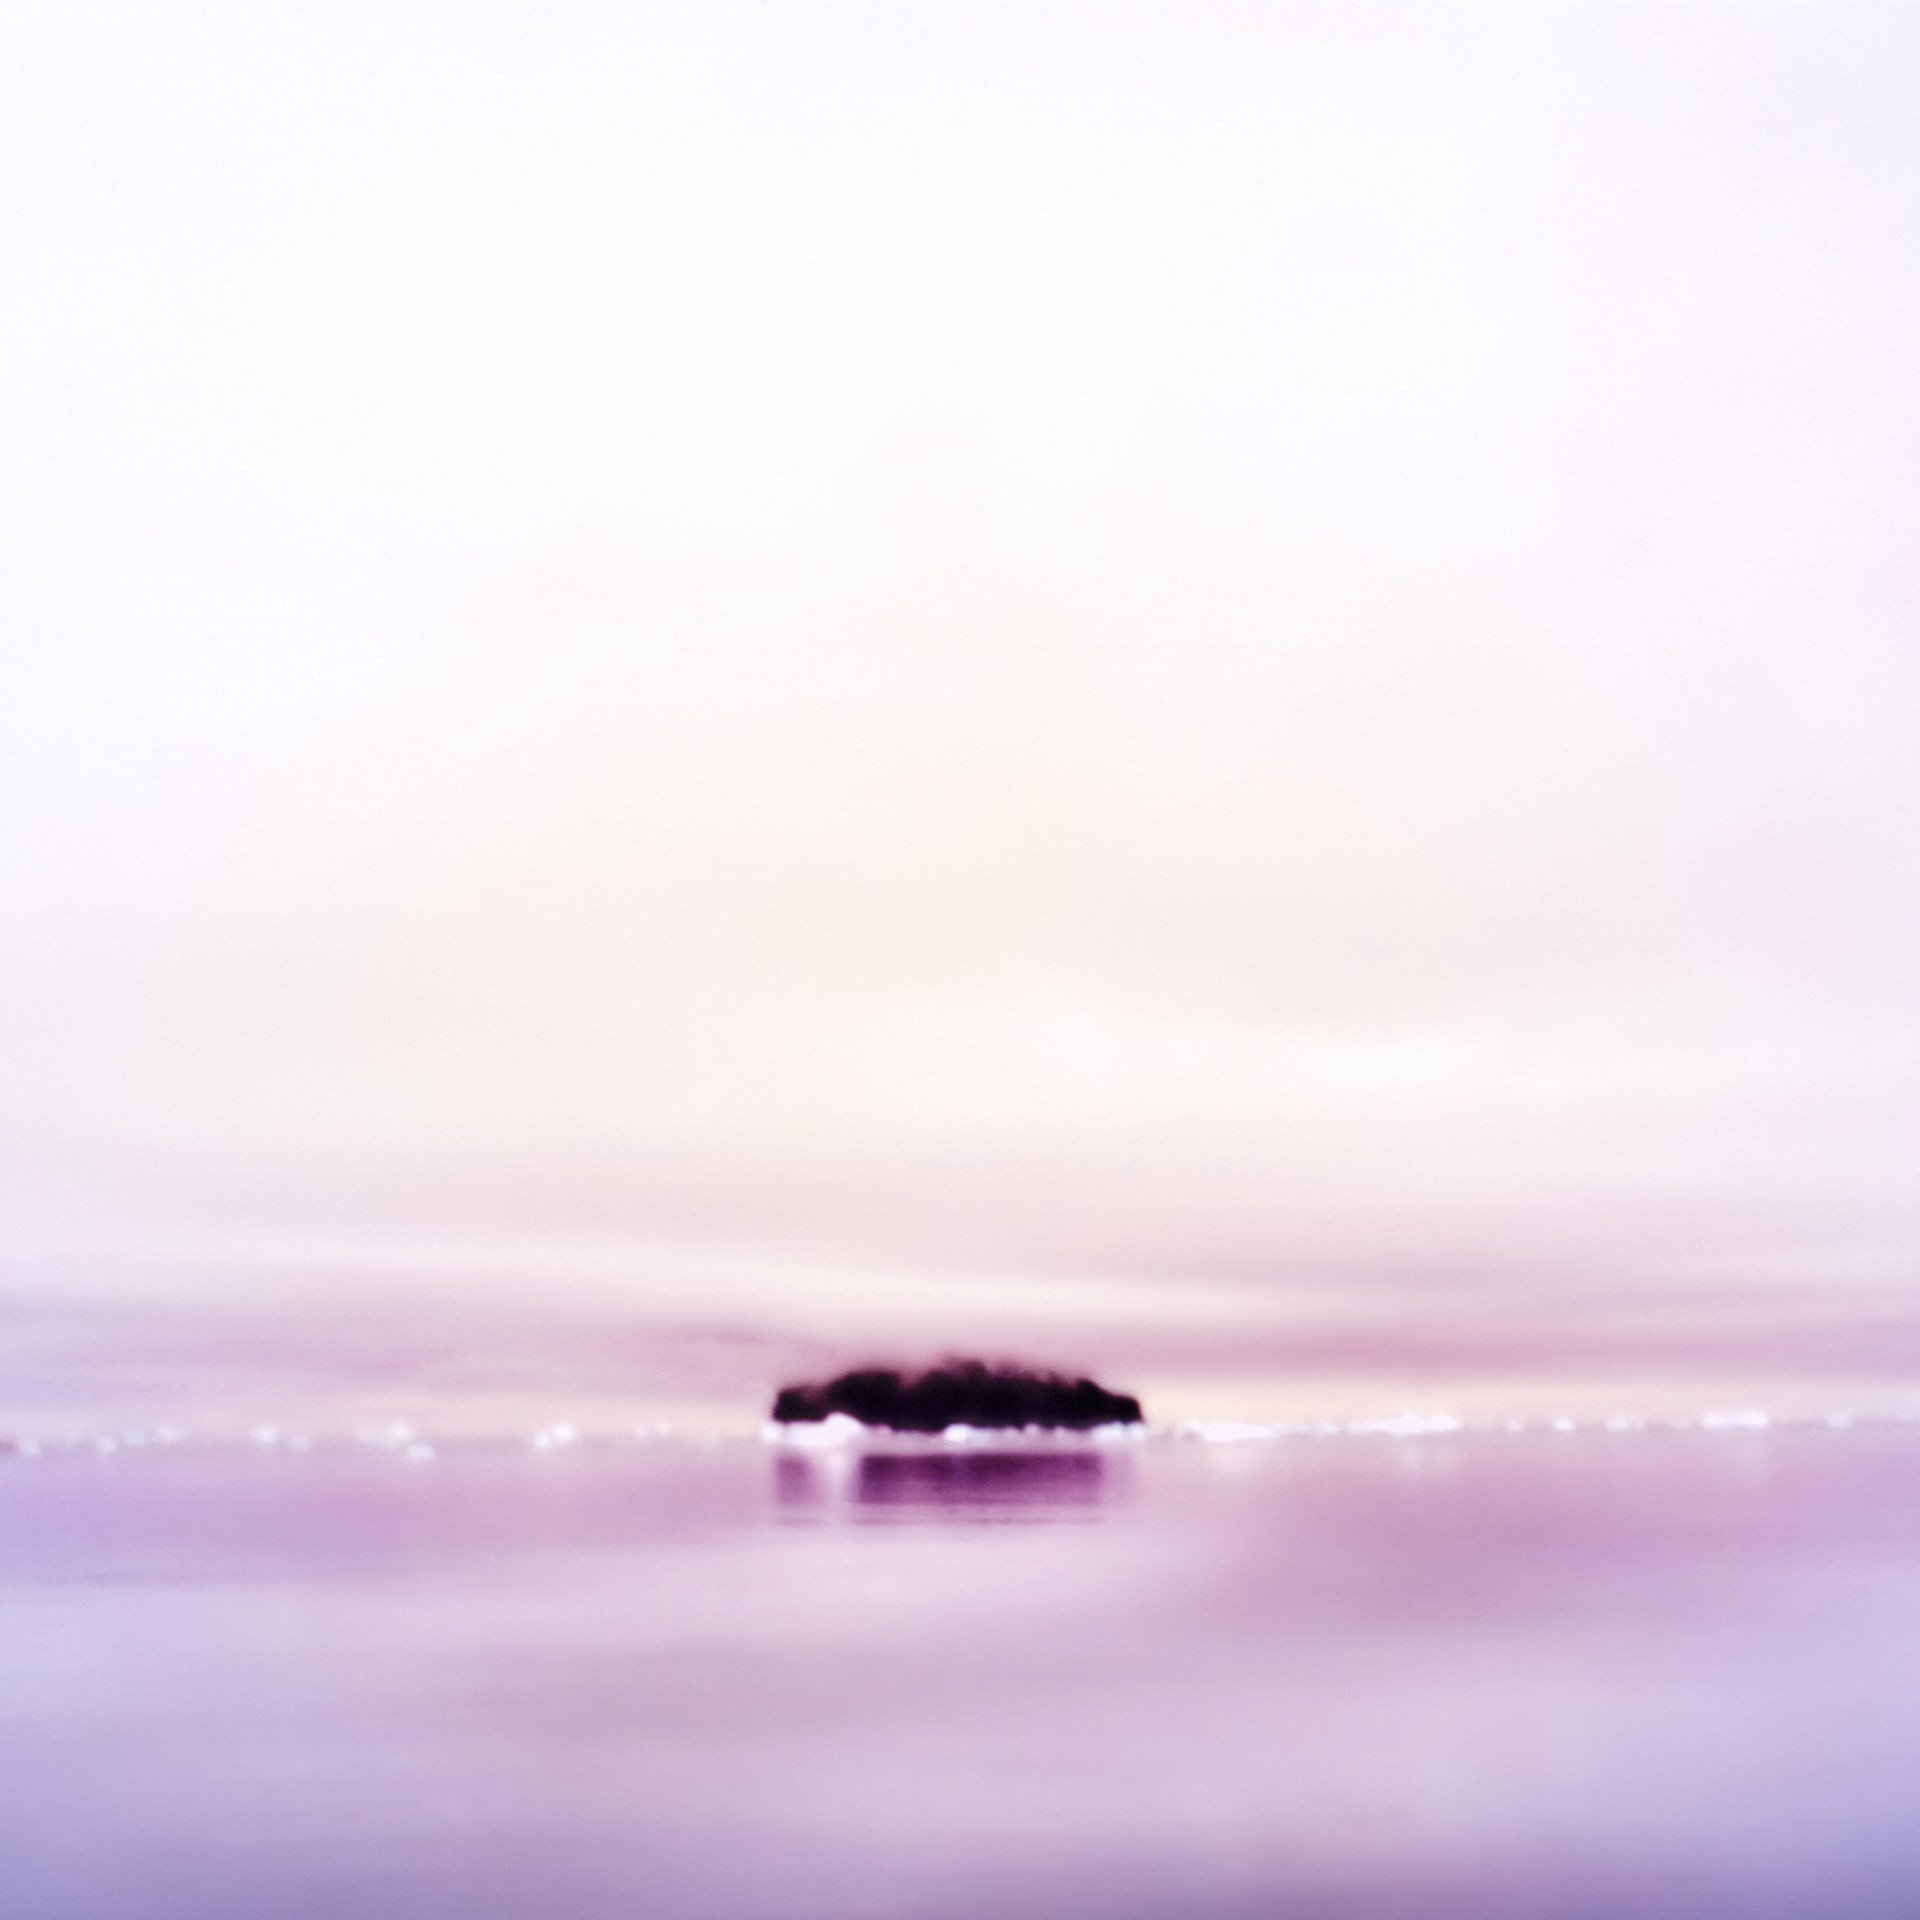 Tiny Island, Antarctica by Osceola Refetoff